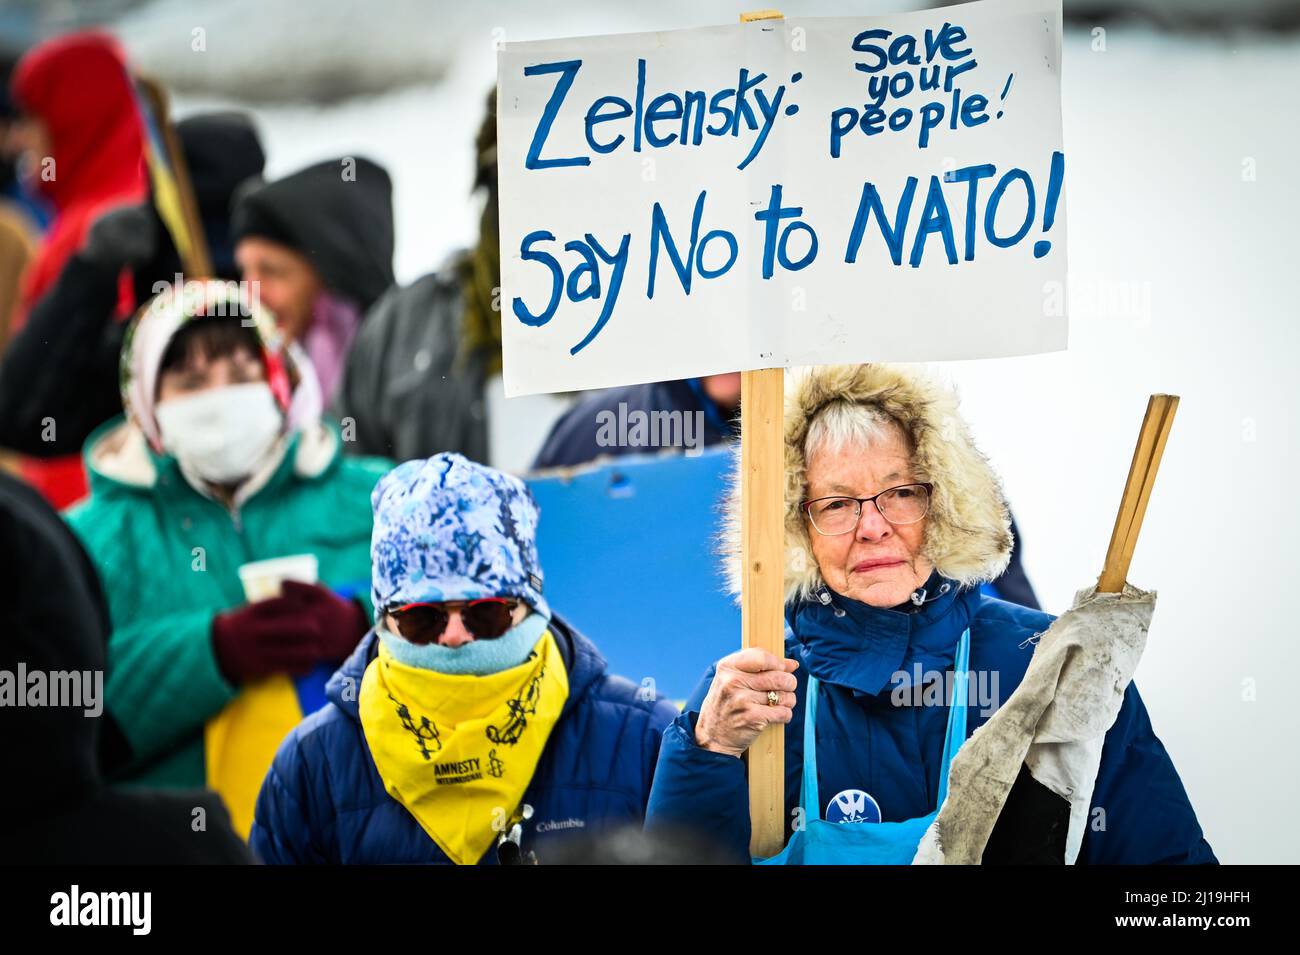 El manifestante cuestiona la sabiduría de la OTAN en una manifestación a favor de Ucrania en la Casa de Estado de Vermont, Montpelier, VT, EE.UU. Foto de stock